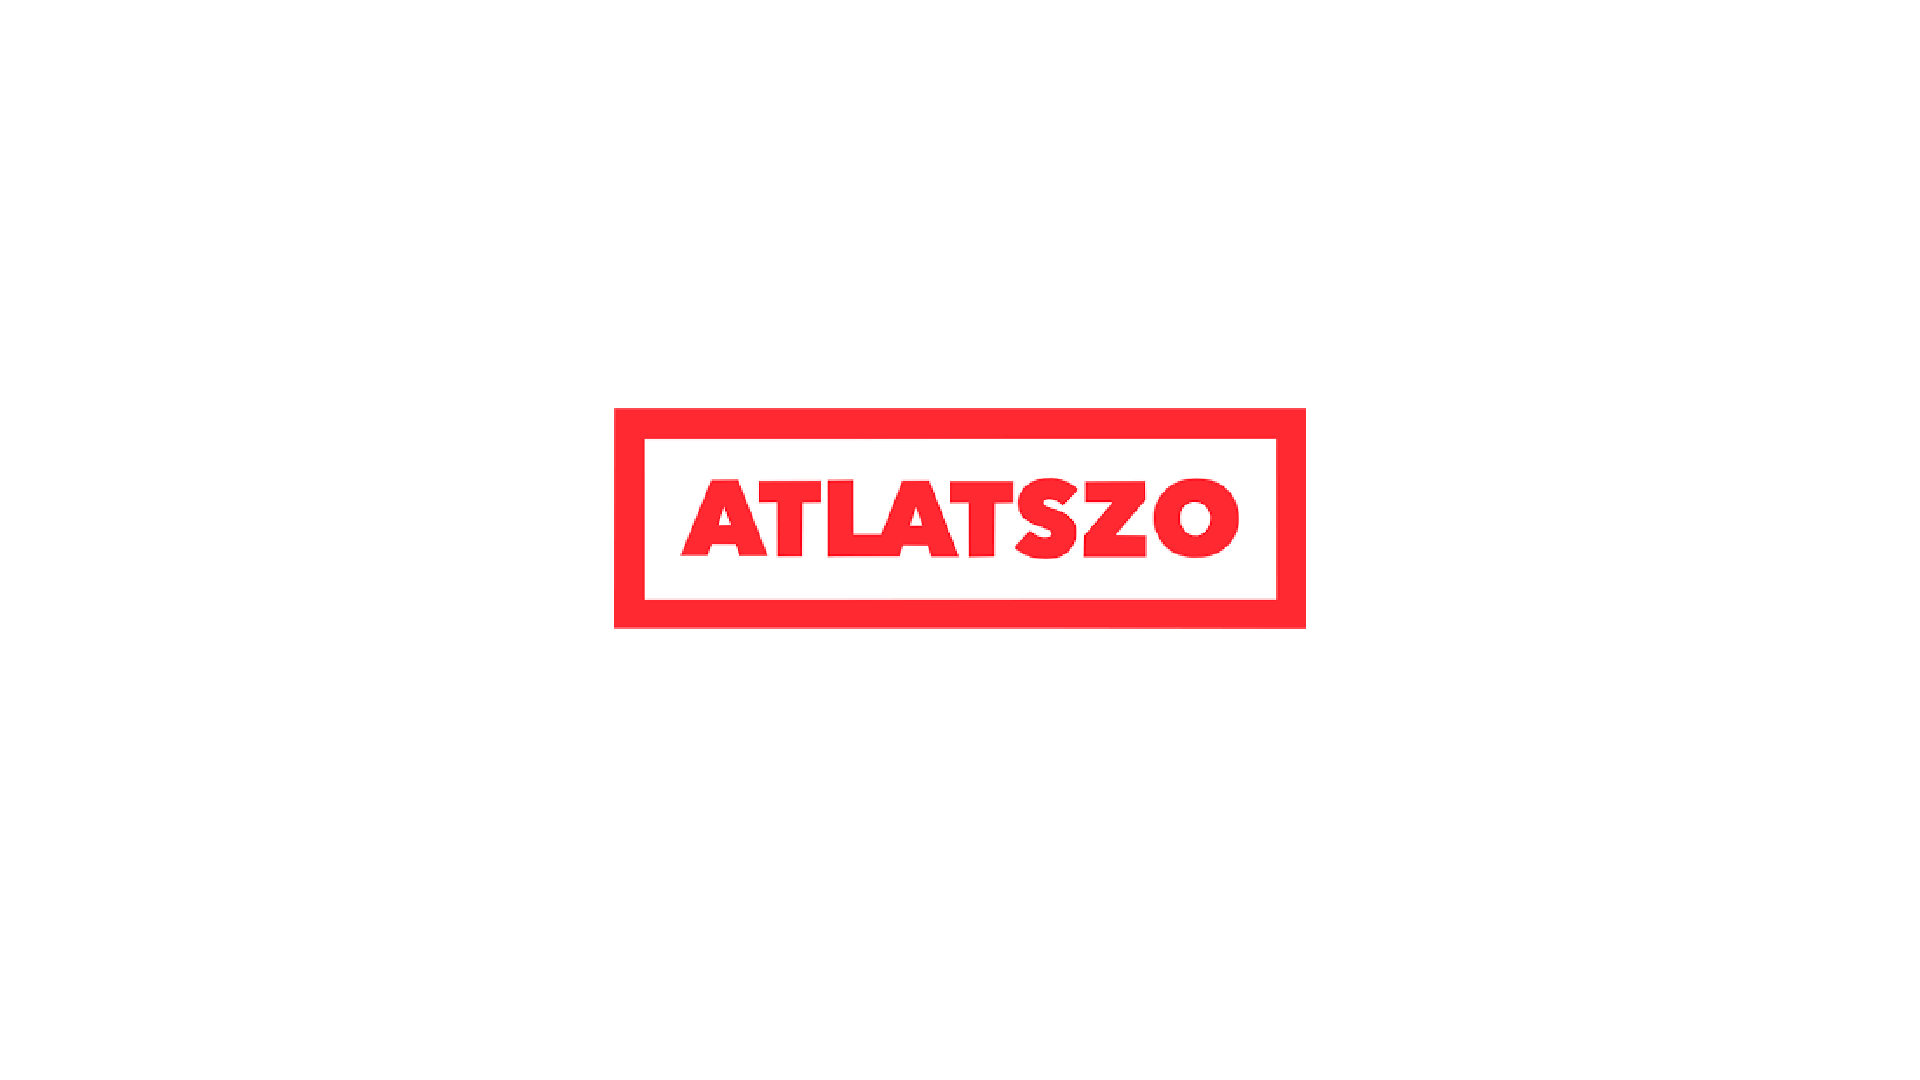 Atlatszo - Internetový spot neziskové organizace